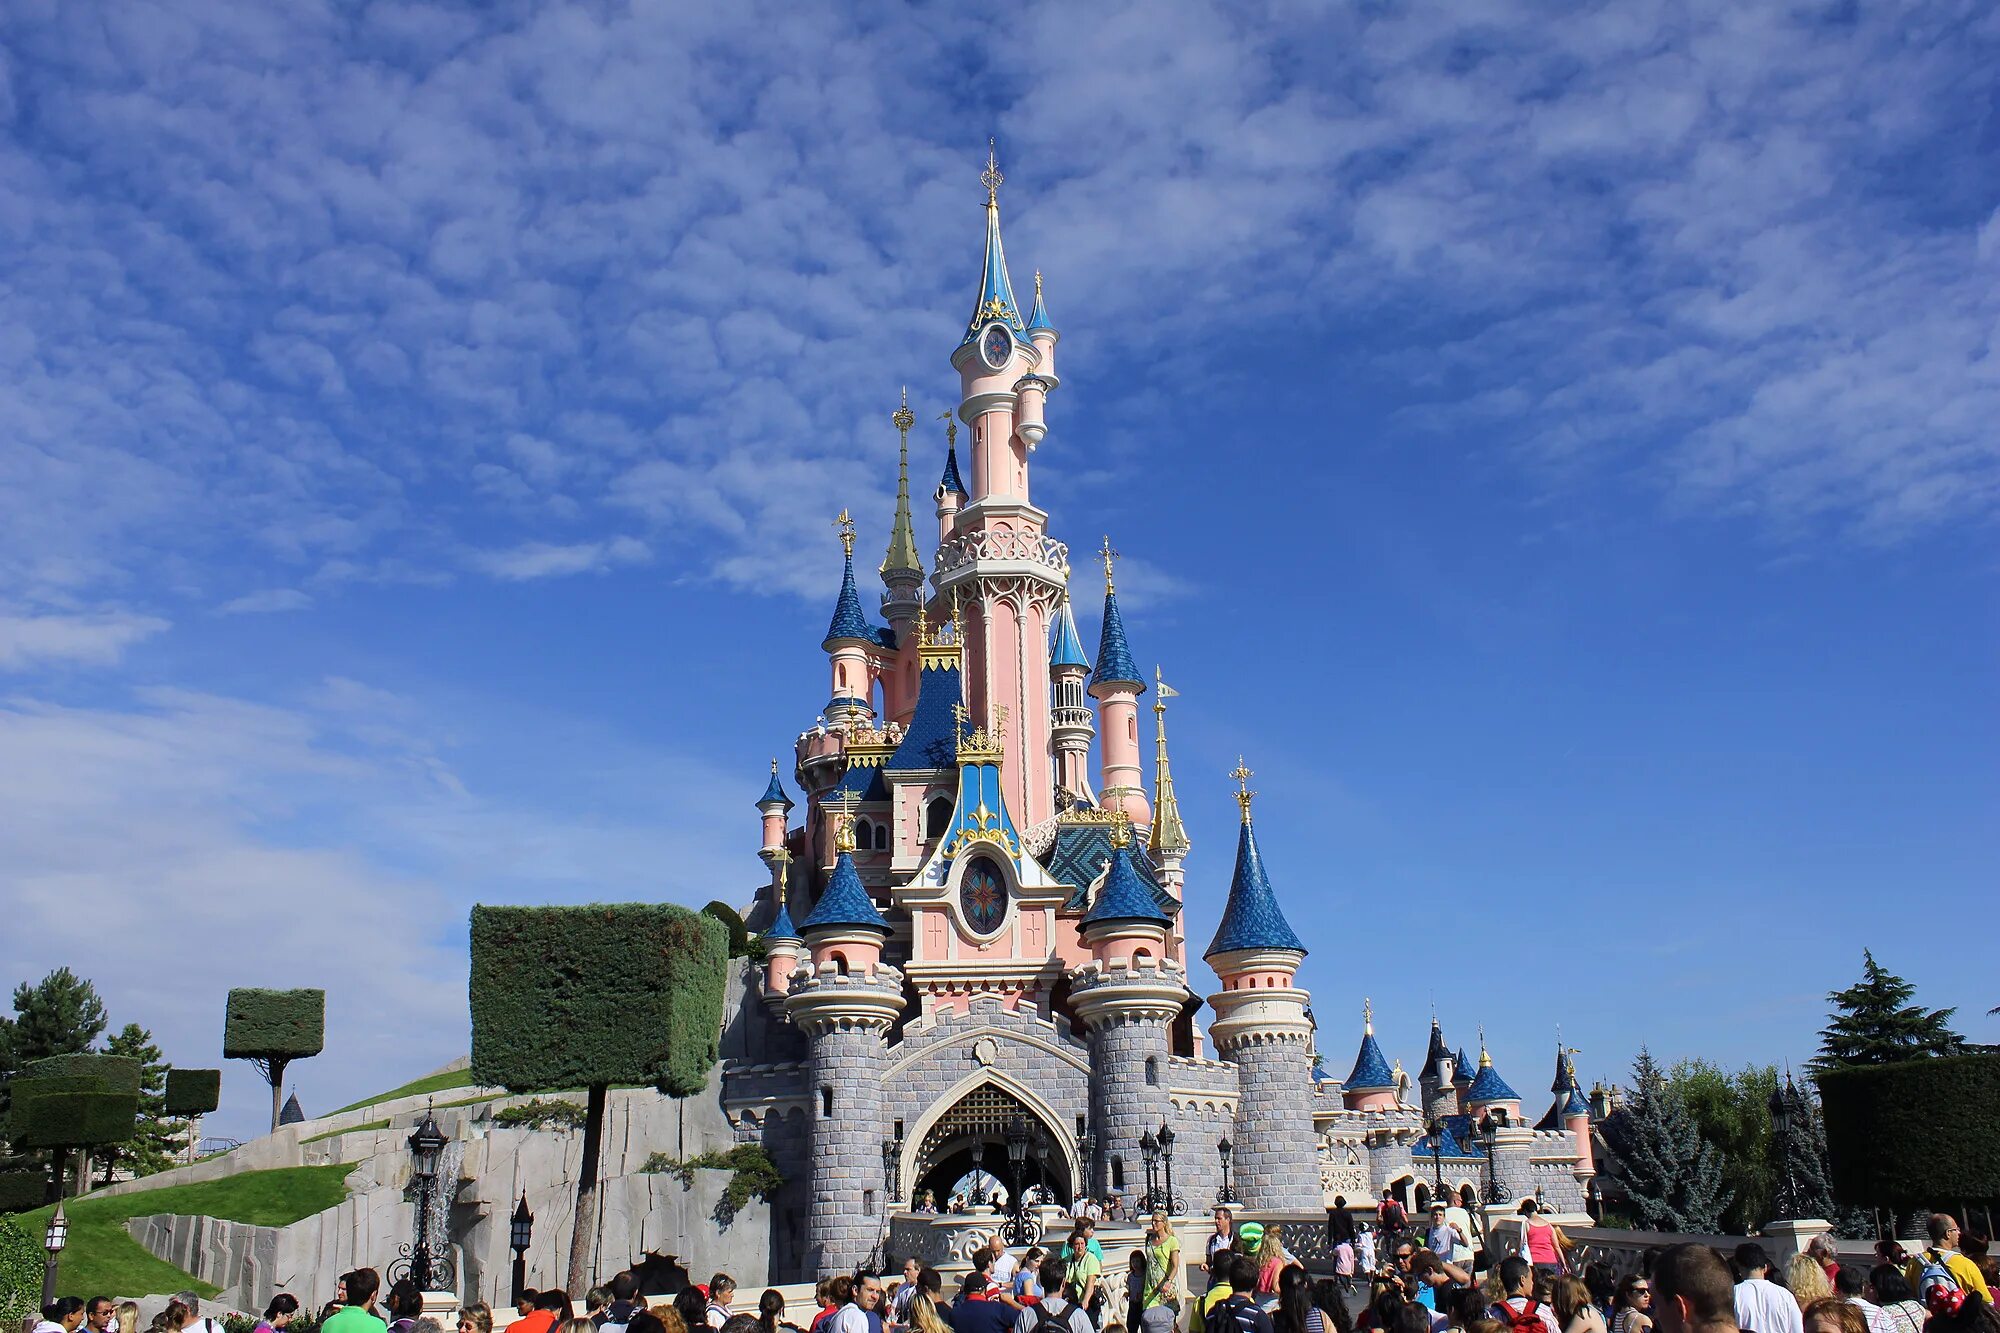 Лучший диснейленд. Диснейленд Париж Disneyland Paris. Парижский Диснейленд замок спящей красавицы. Парк Уолт Дисней в Париже. Диснейленд Париж Диснейленд парк.